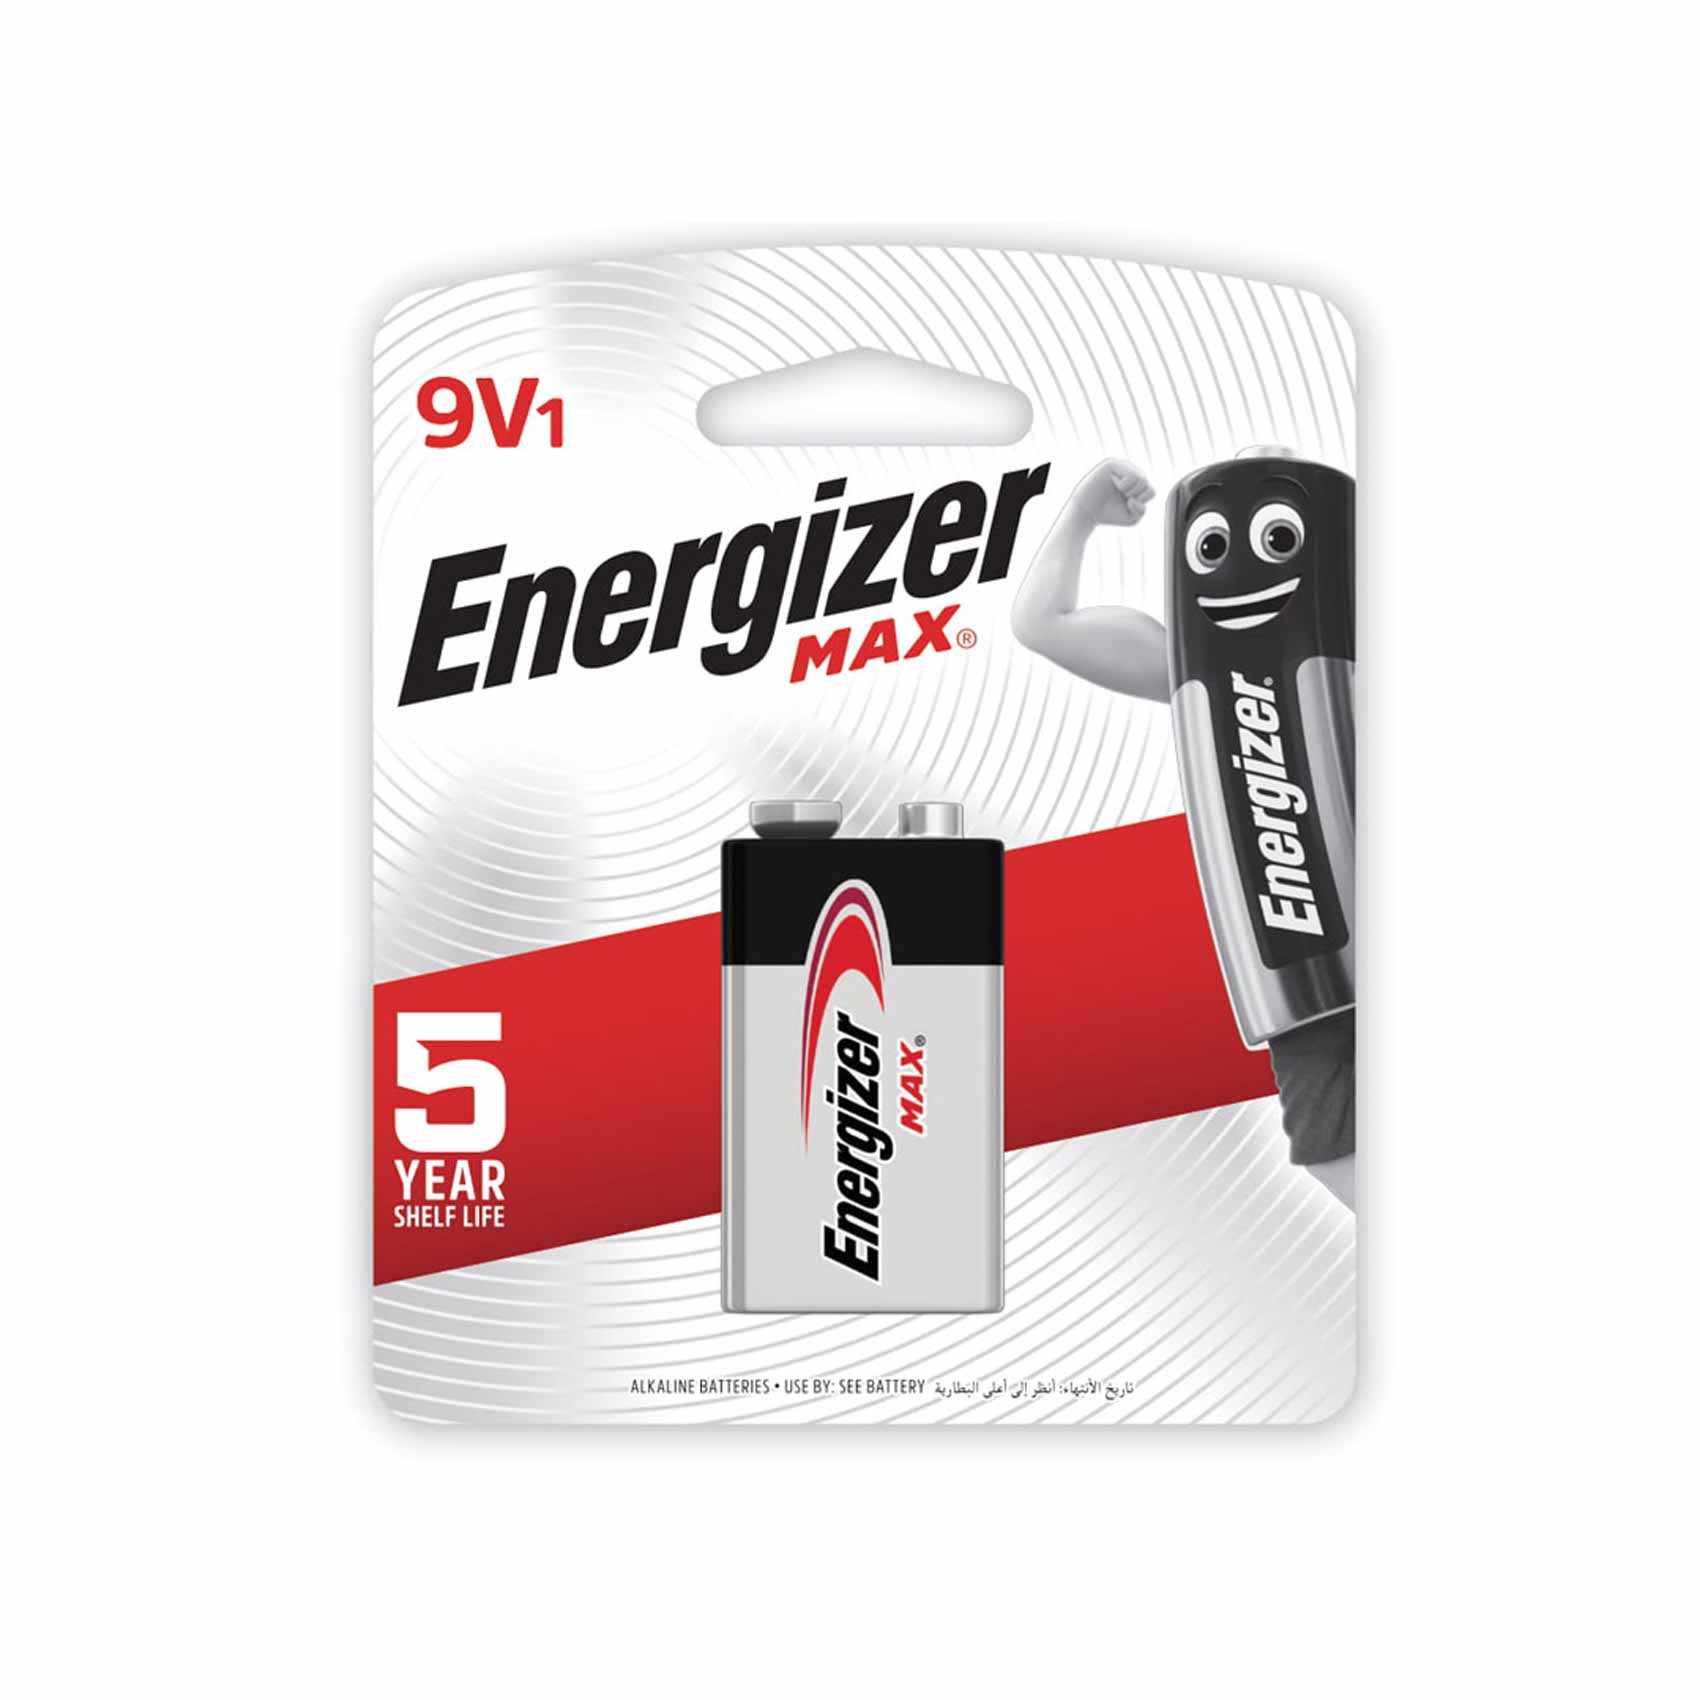 Energizer Max Alkaline Battery 9V 1 Battery